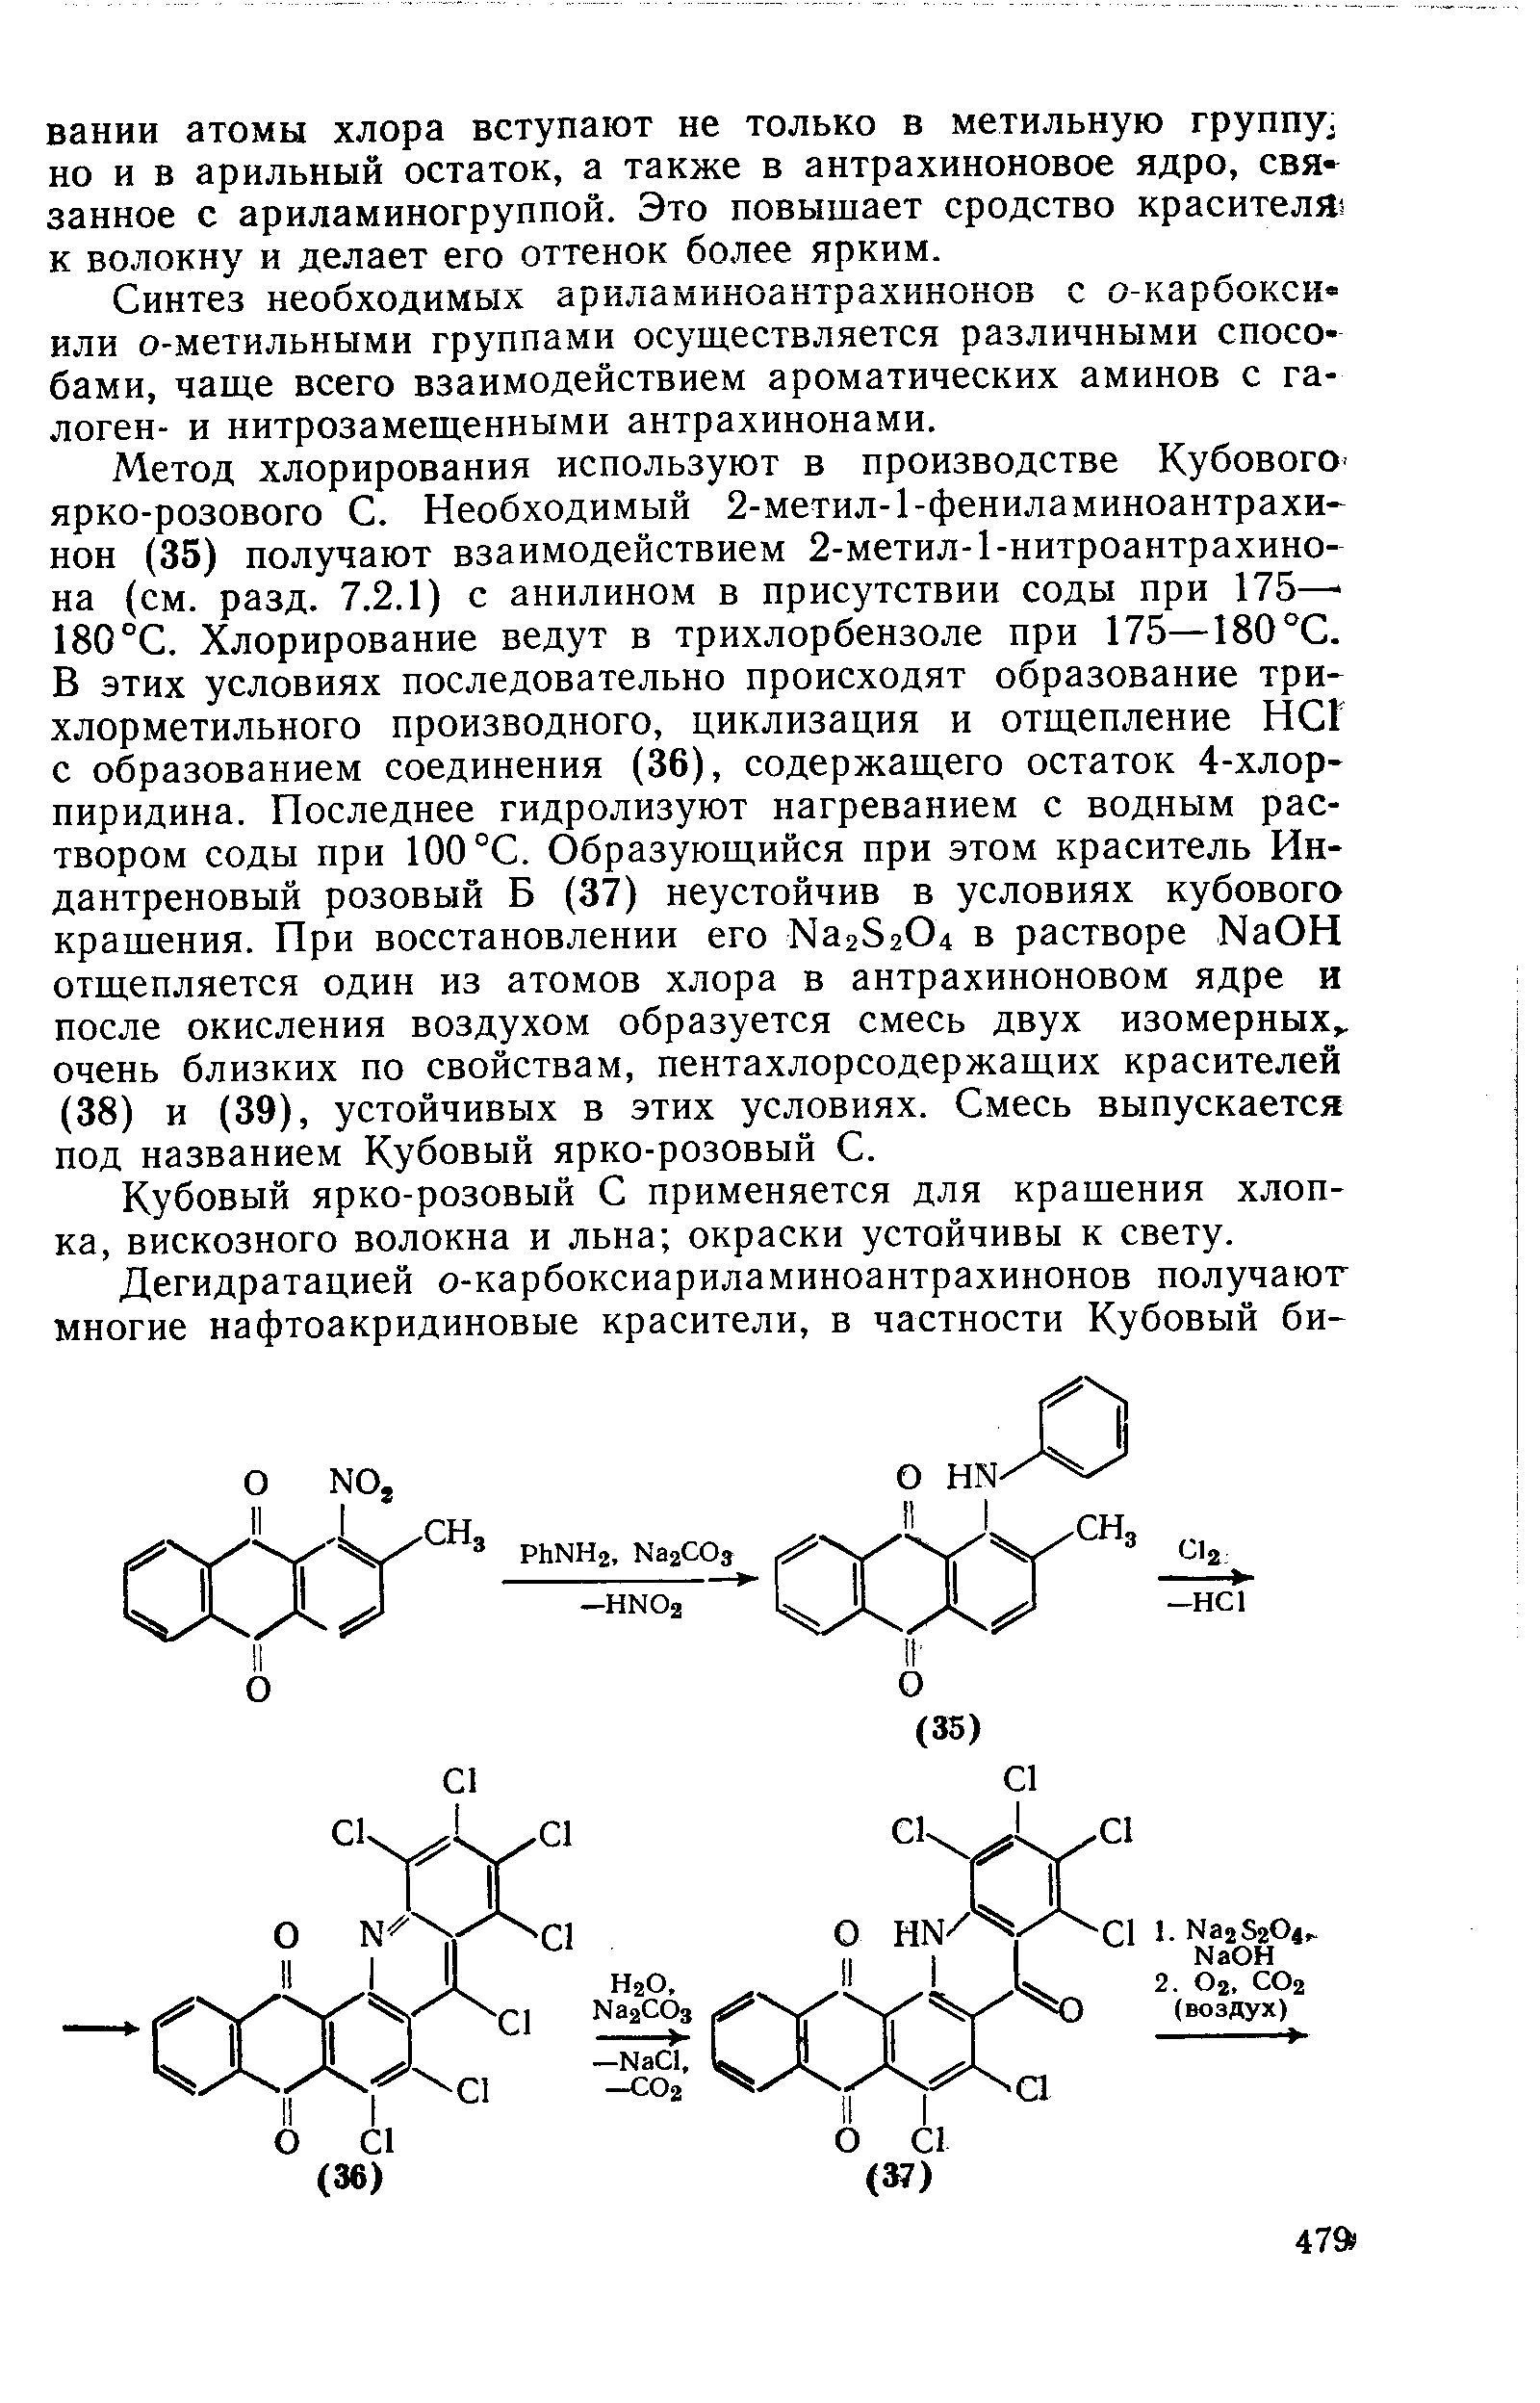 Синтез необходимых ариламиноантрахинонов с о-карбокси или о-метильными группами осуществляется различными способами, чаще всего взаимодействием ароматических аминов с галоген- и нитрозамещенными антрахинонами.